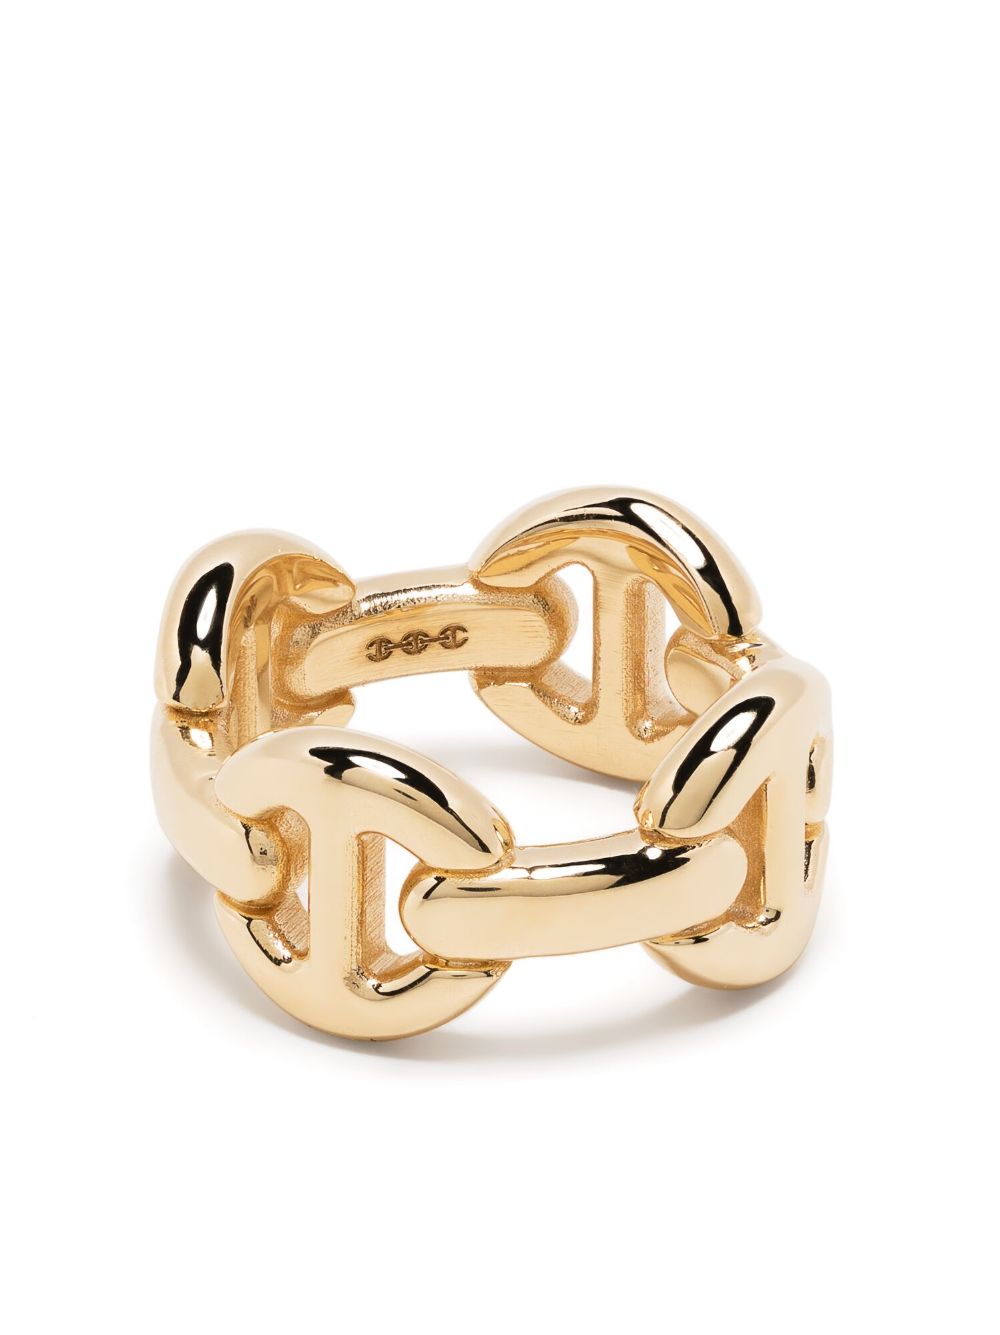 HOORSENBUHS chain link ring - Gold von HOORSENBUHS